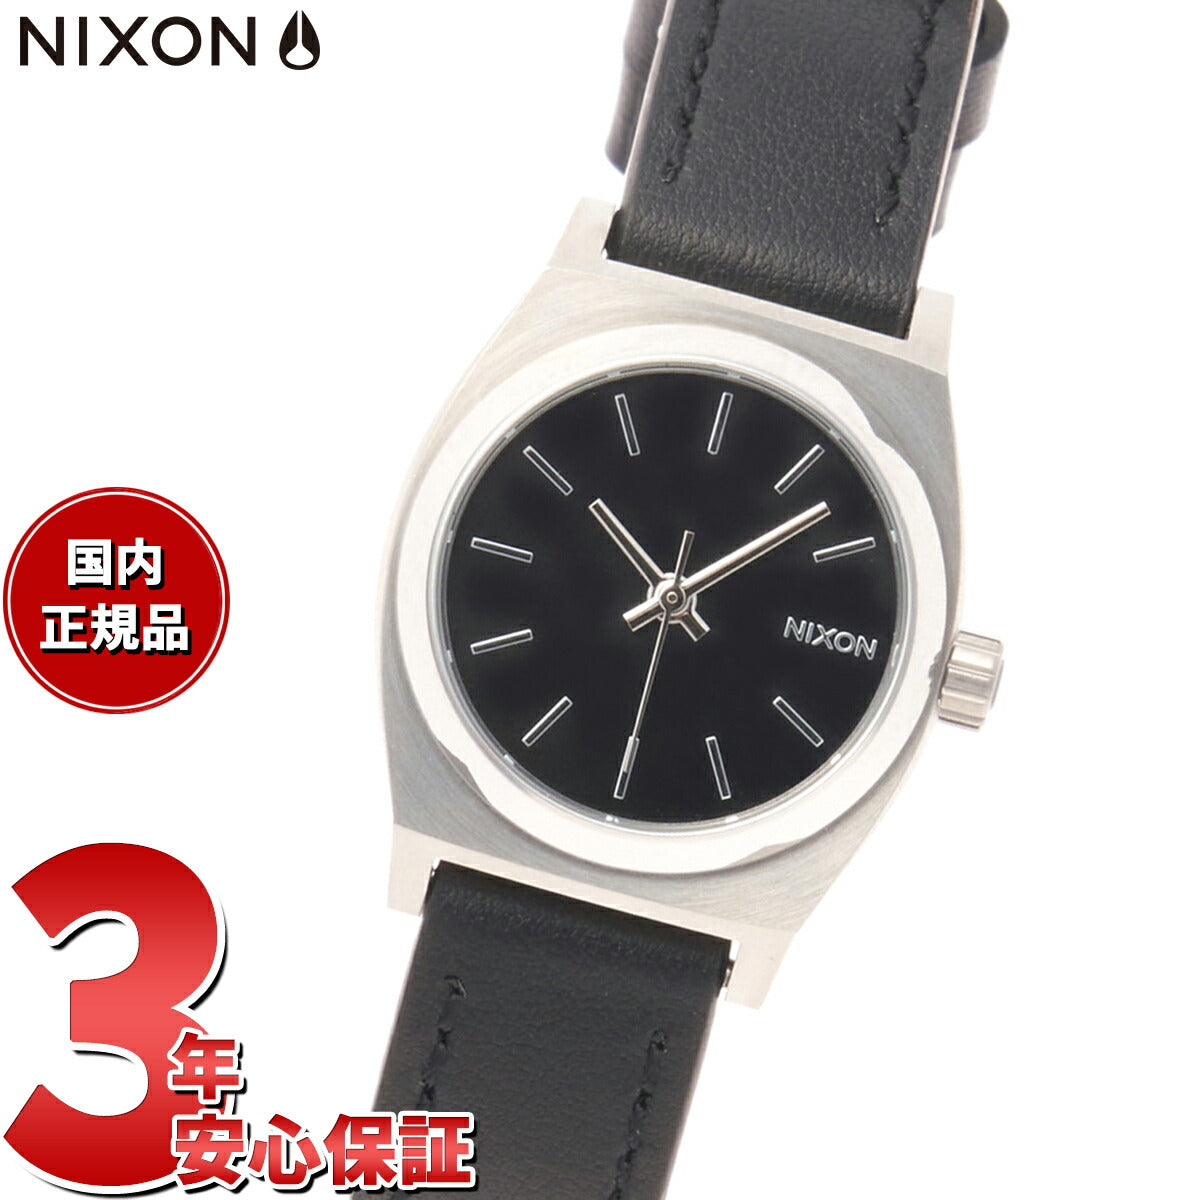 ニクソン NIXON スモールタイムテラーレザー Small Time Teller Leather 日本限定モデル 腕時計 レディース シ –  neel selectshop